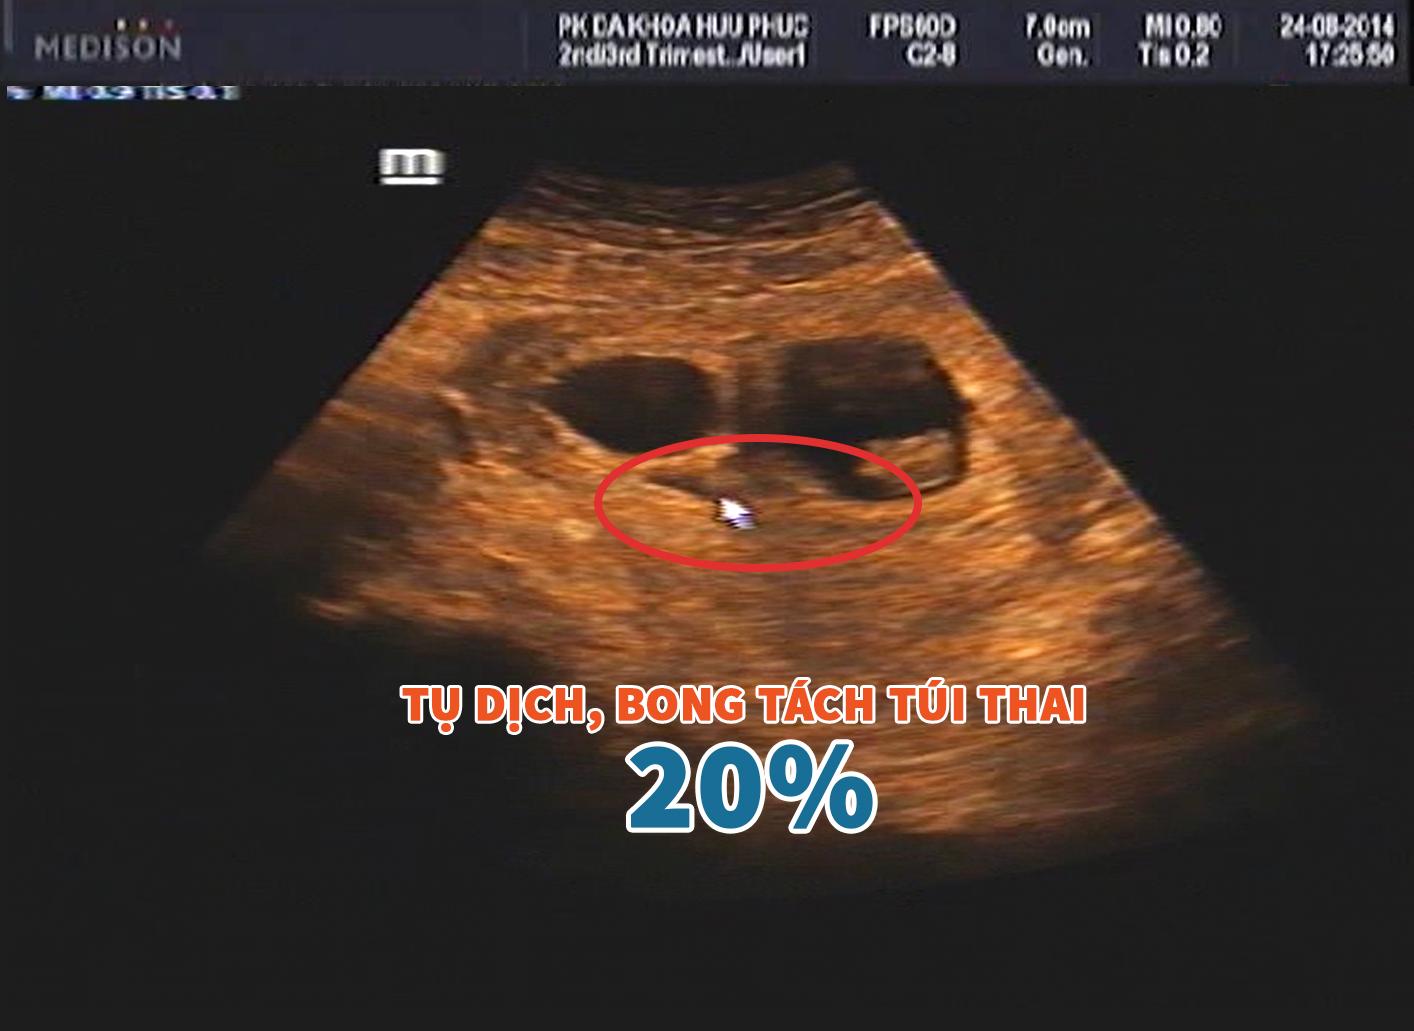 Hình ảnh siêu âm bong tách túi thai 20%